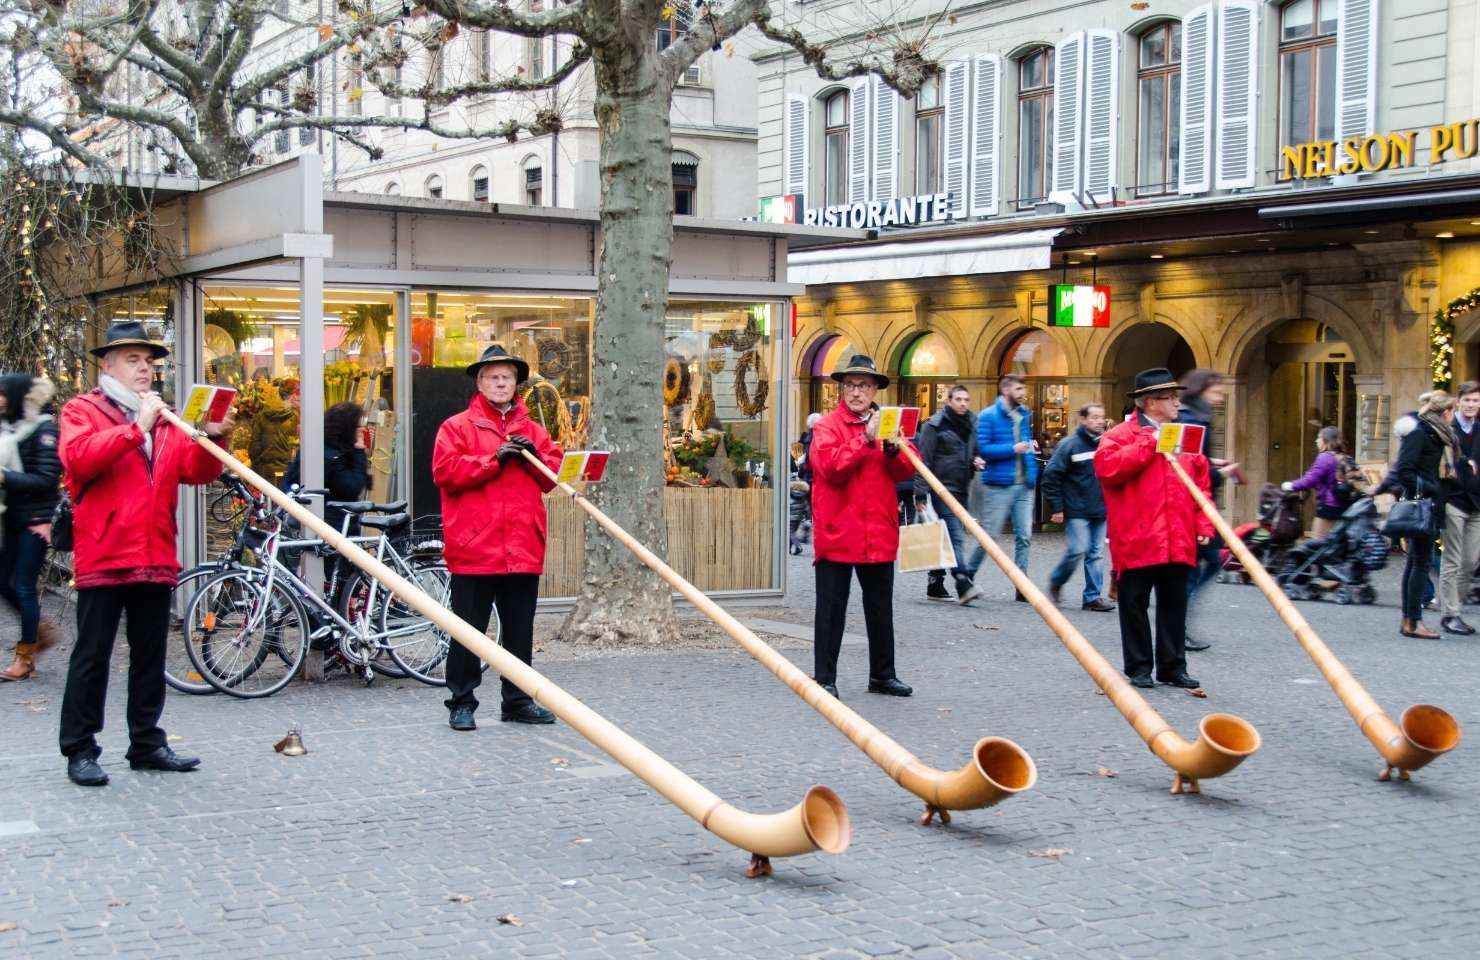 Männer mit großen Instrumenten auf der Straße